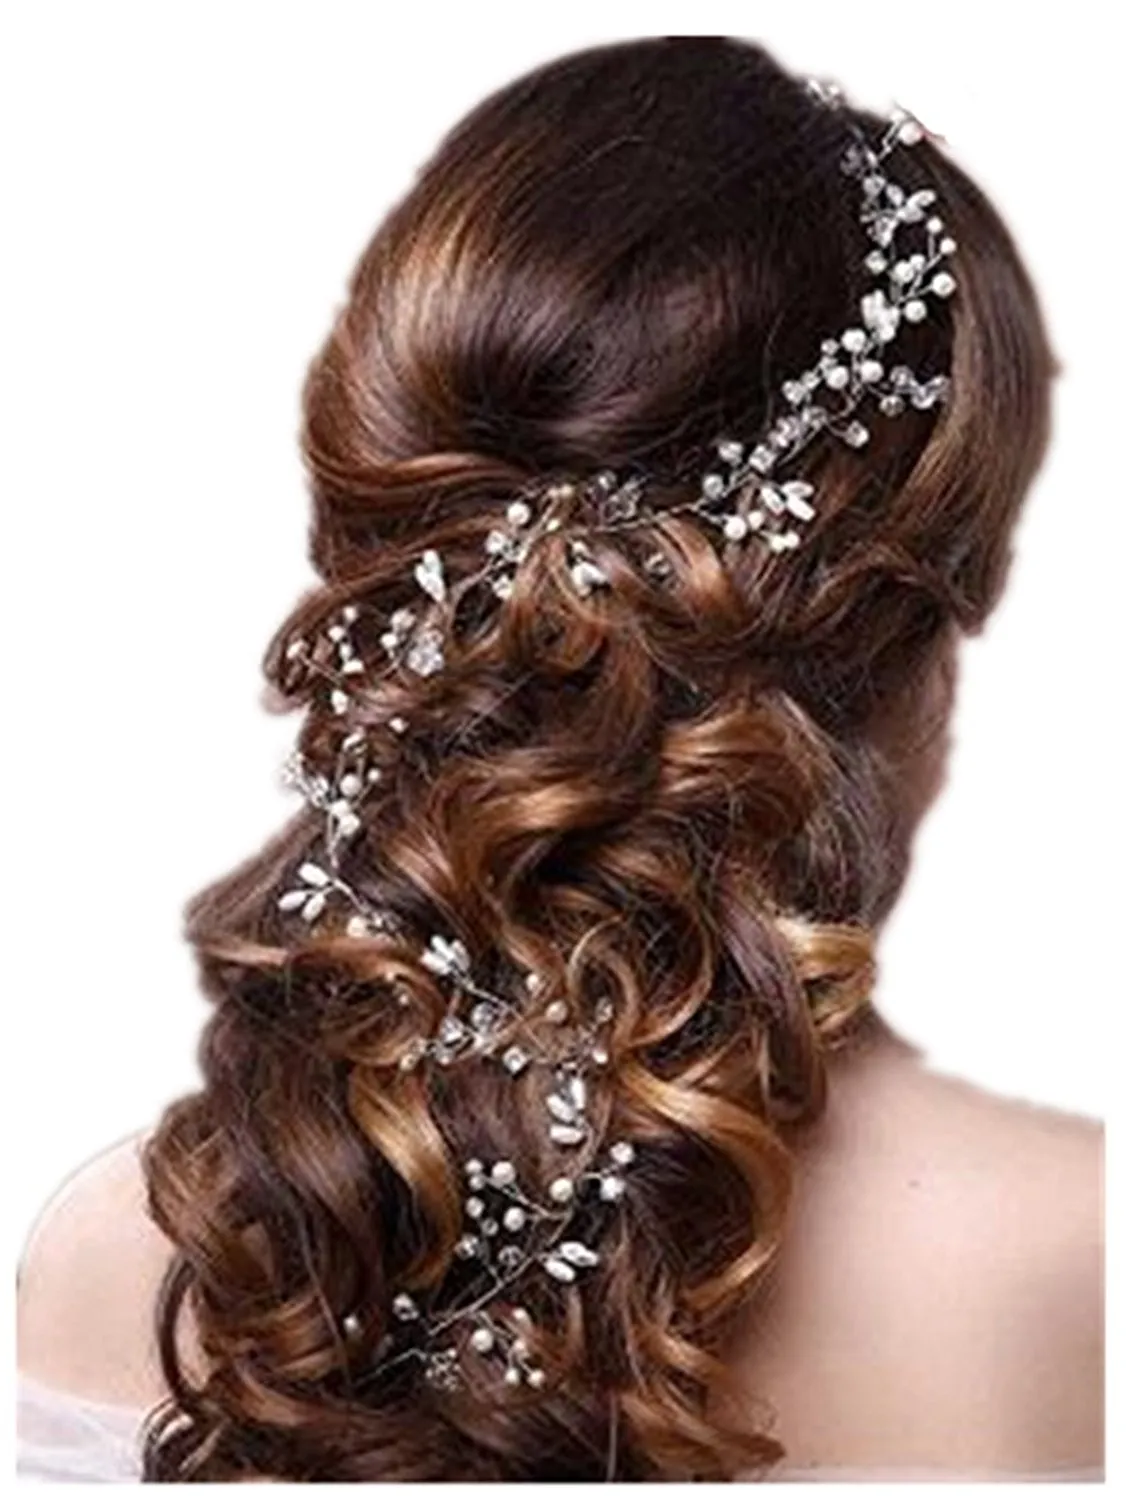 Mariage mariée cristal fascinateurs longue chaîne de cheveux bijoux strass couronne princesse reine coiffure bal or argent bande de cheveux accessoires